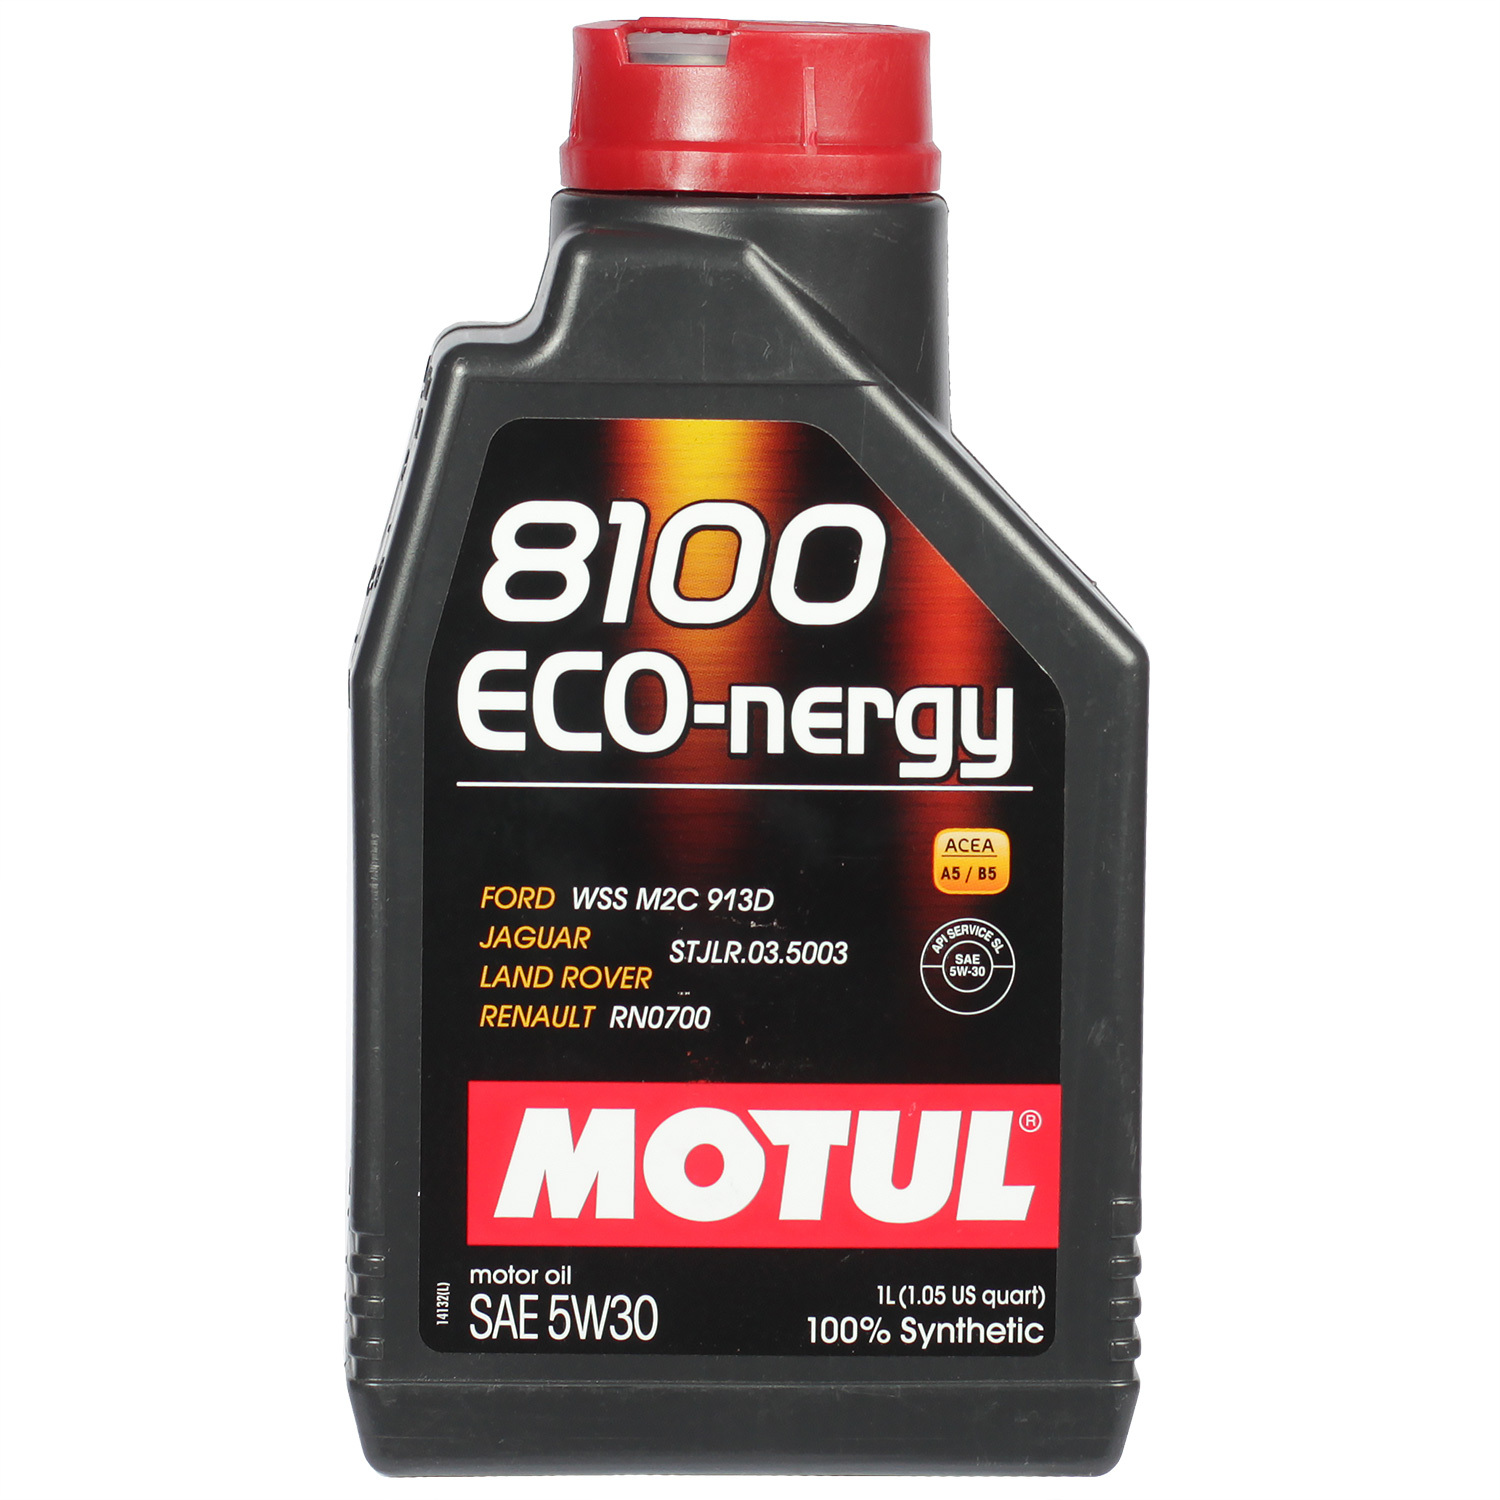 motul моторное масло motul 8100 x clean 5w 30 1 л Motul Моторное масло Motul 8100 Eco-nergy 5W-30, 1 л